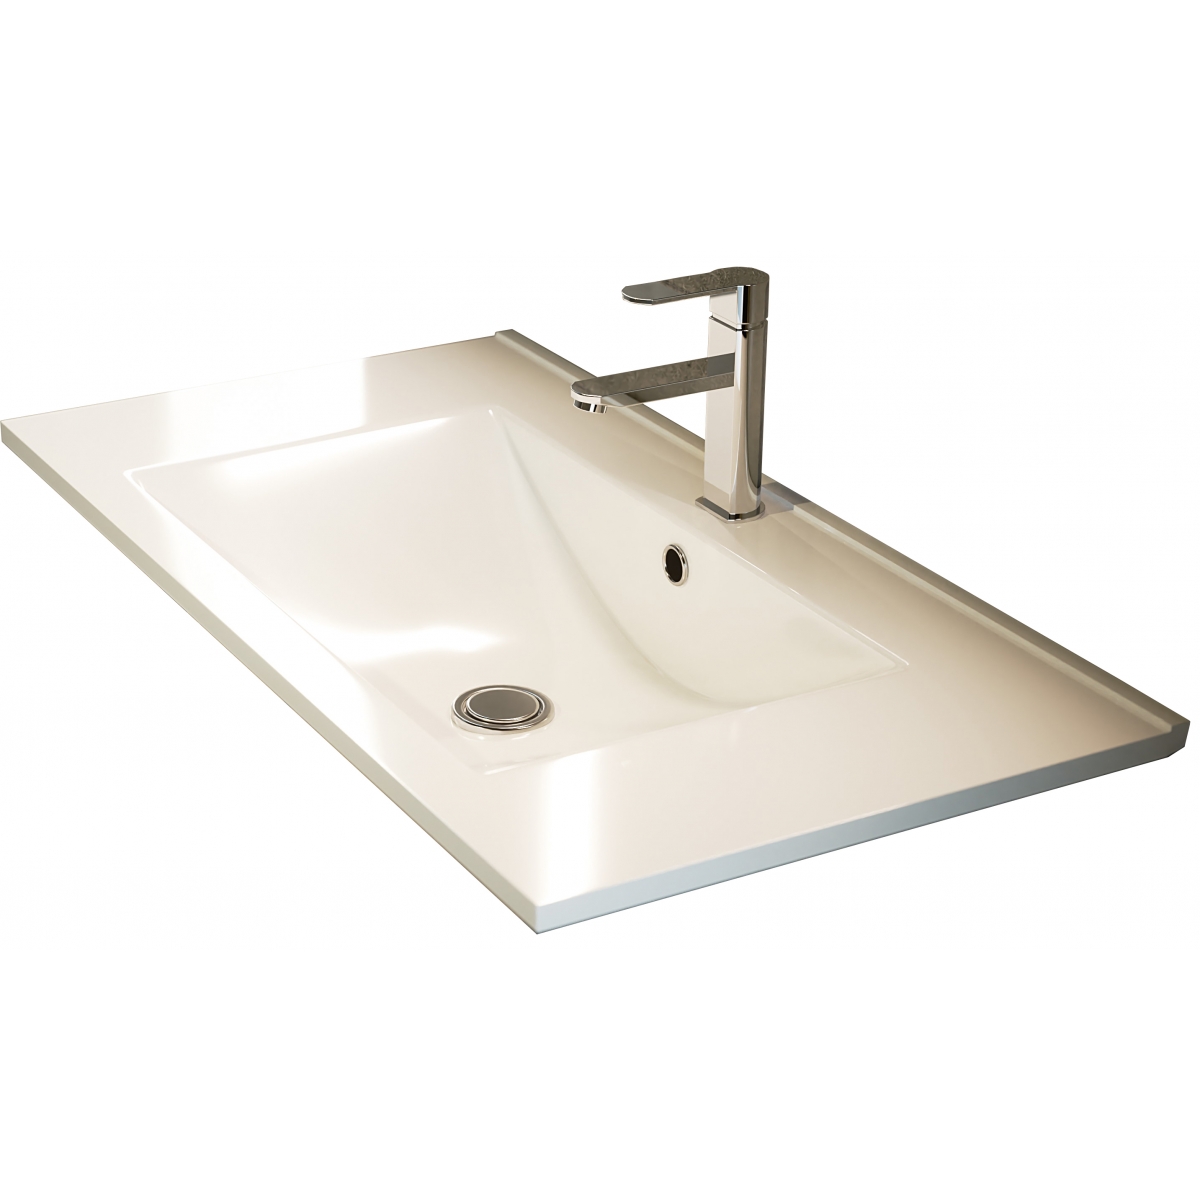 Fotos ambiente de Mueble de baño de suelo Mayorca de 60 cm de ancho color Hiberian con lavabo integrado [55396]